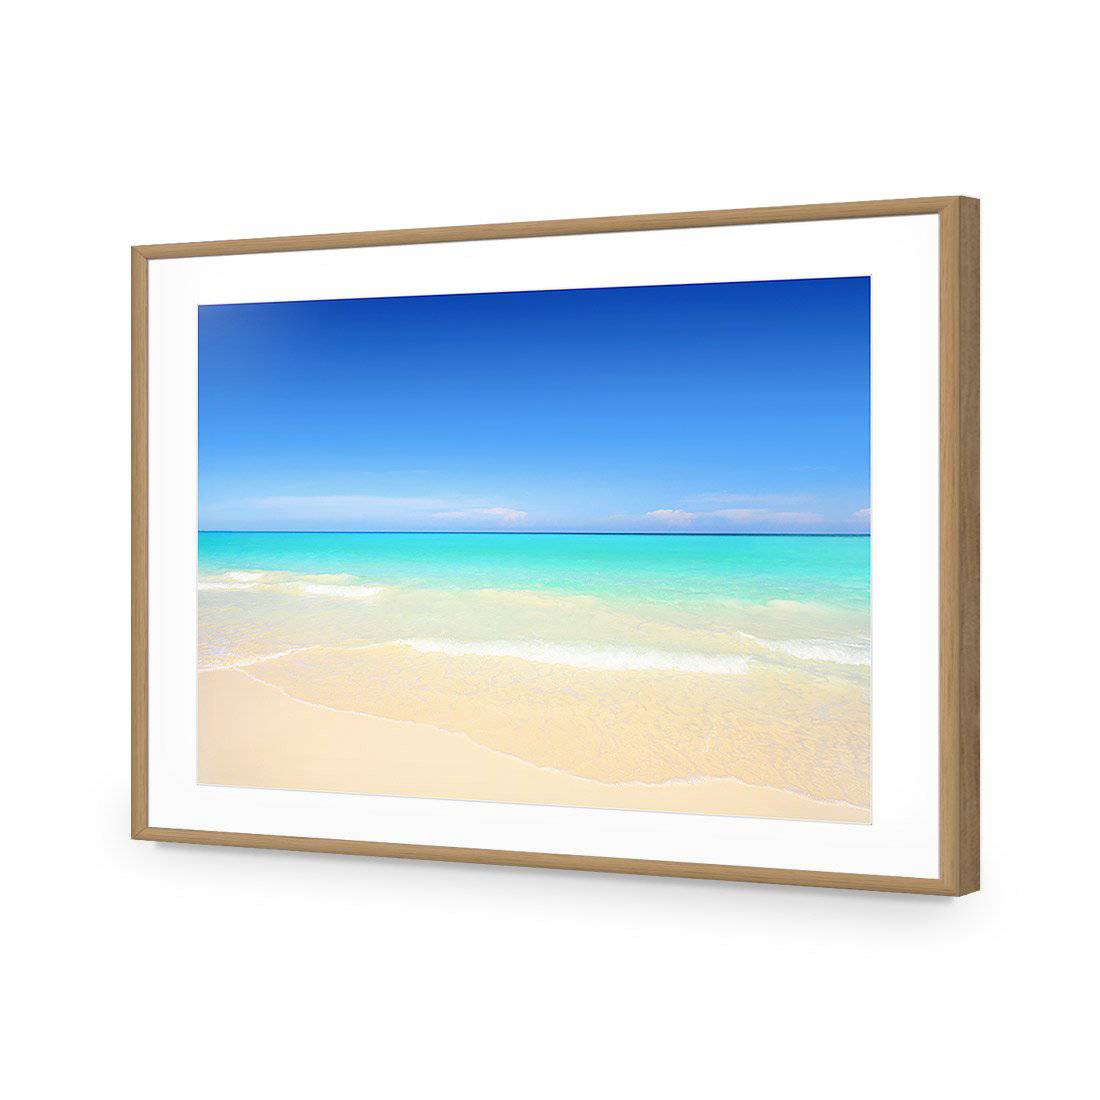 Paradise Beach-Acrylic-Wall Art Design-With Border-Acrylic - Oak Frame-45x30cm-Wall Art Designs